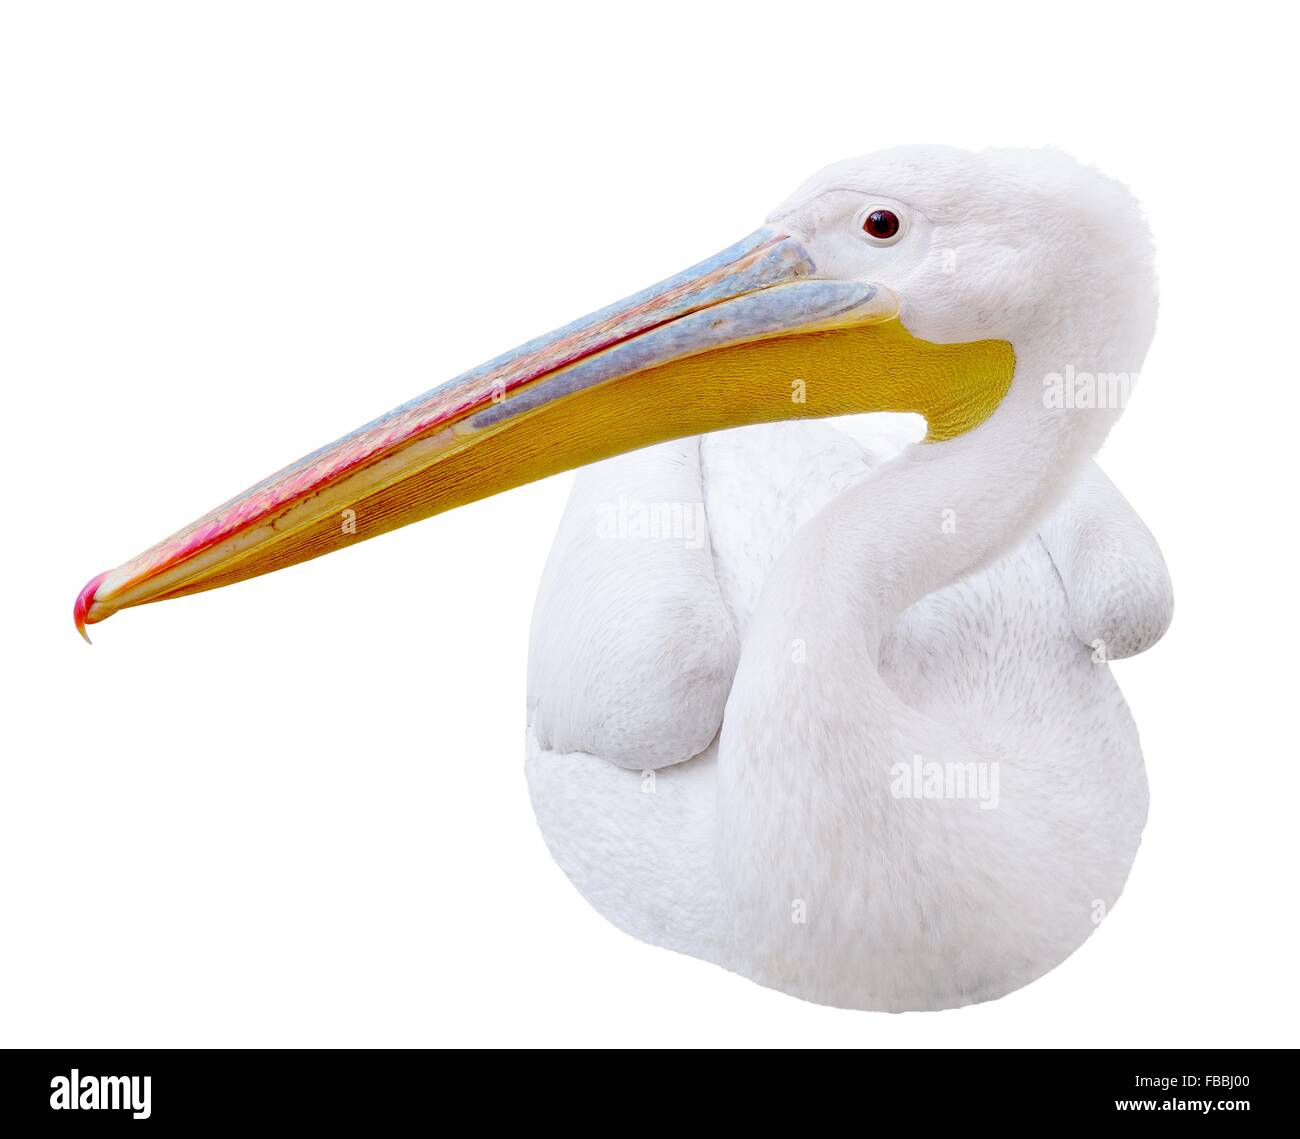 Pelican seduta lateralmente guarda nell'immagine. Isolato su sfondo bianco Foto Stock